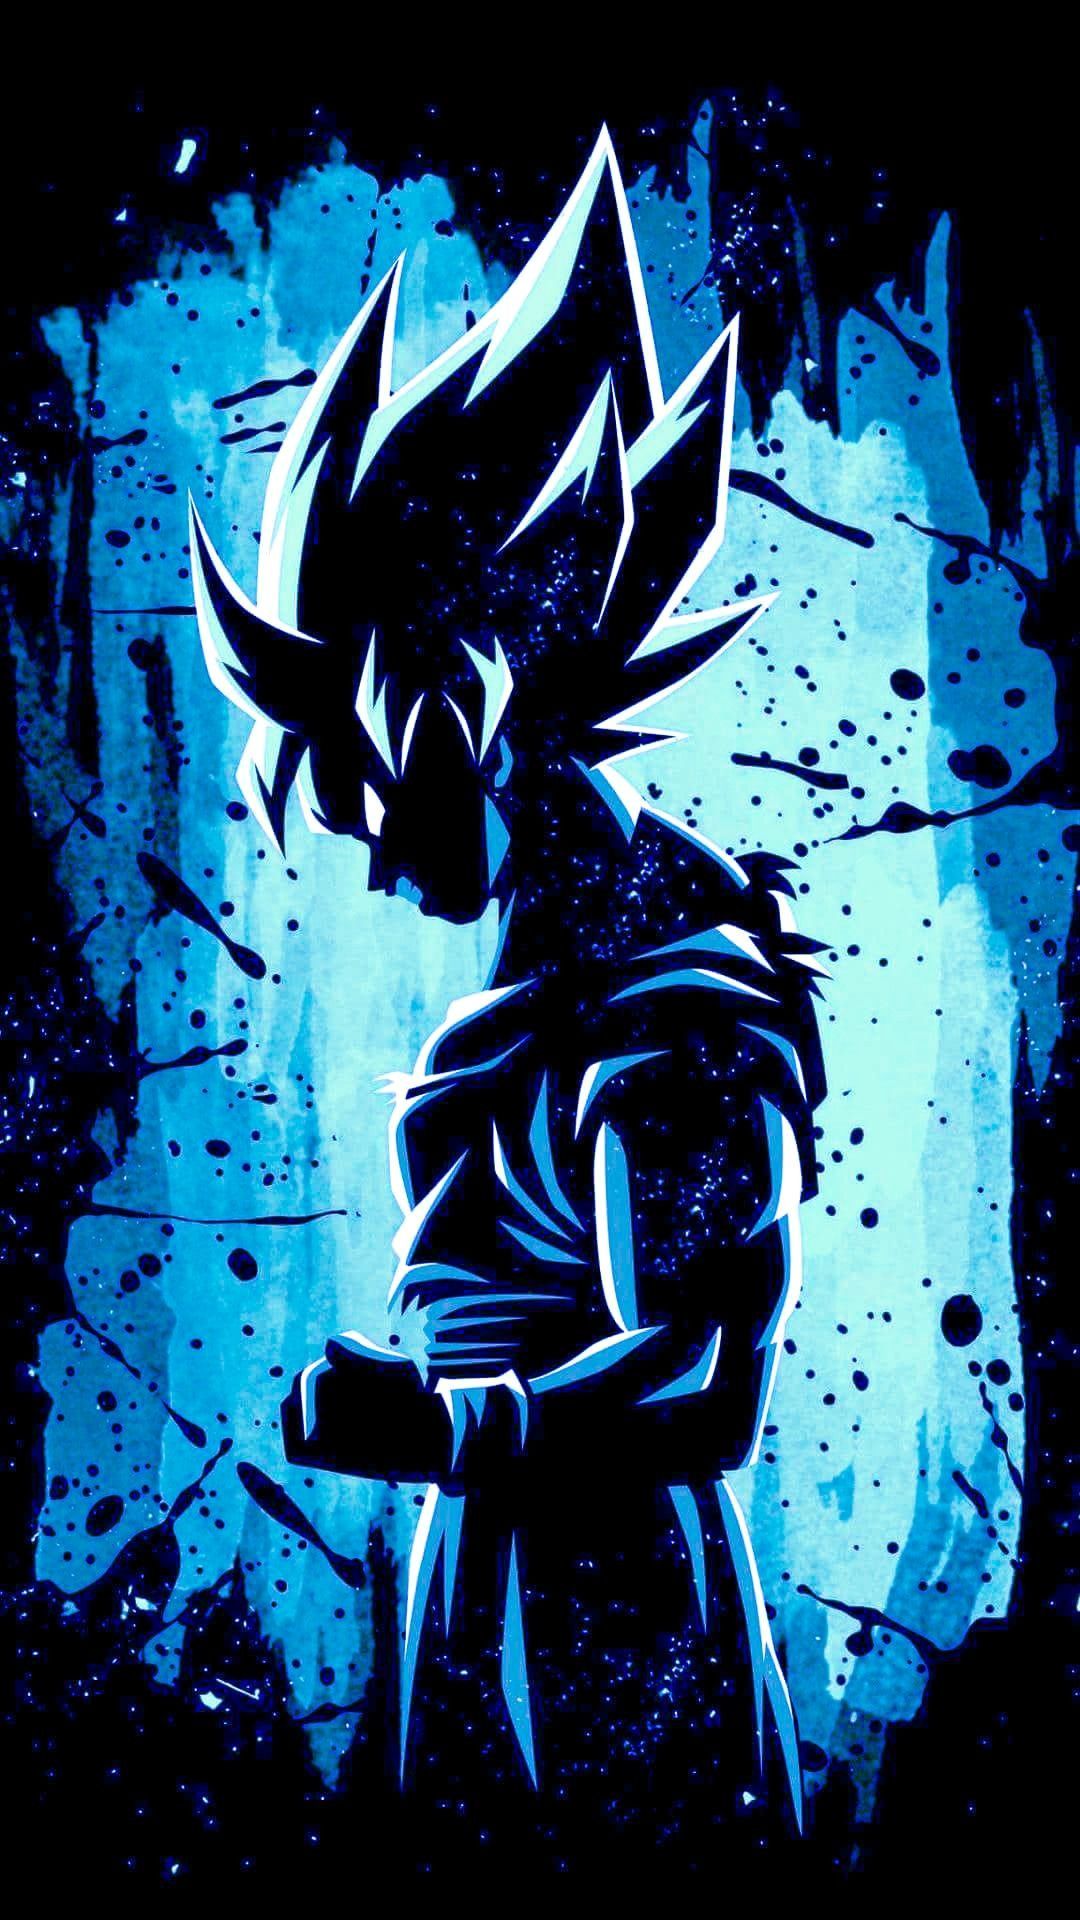 Inspirational Goku Live Wallpaper iPhone 7 Wall Black. Dragon ball wallpaper, Dragon ball super wallpaper, Anime dragon ball